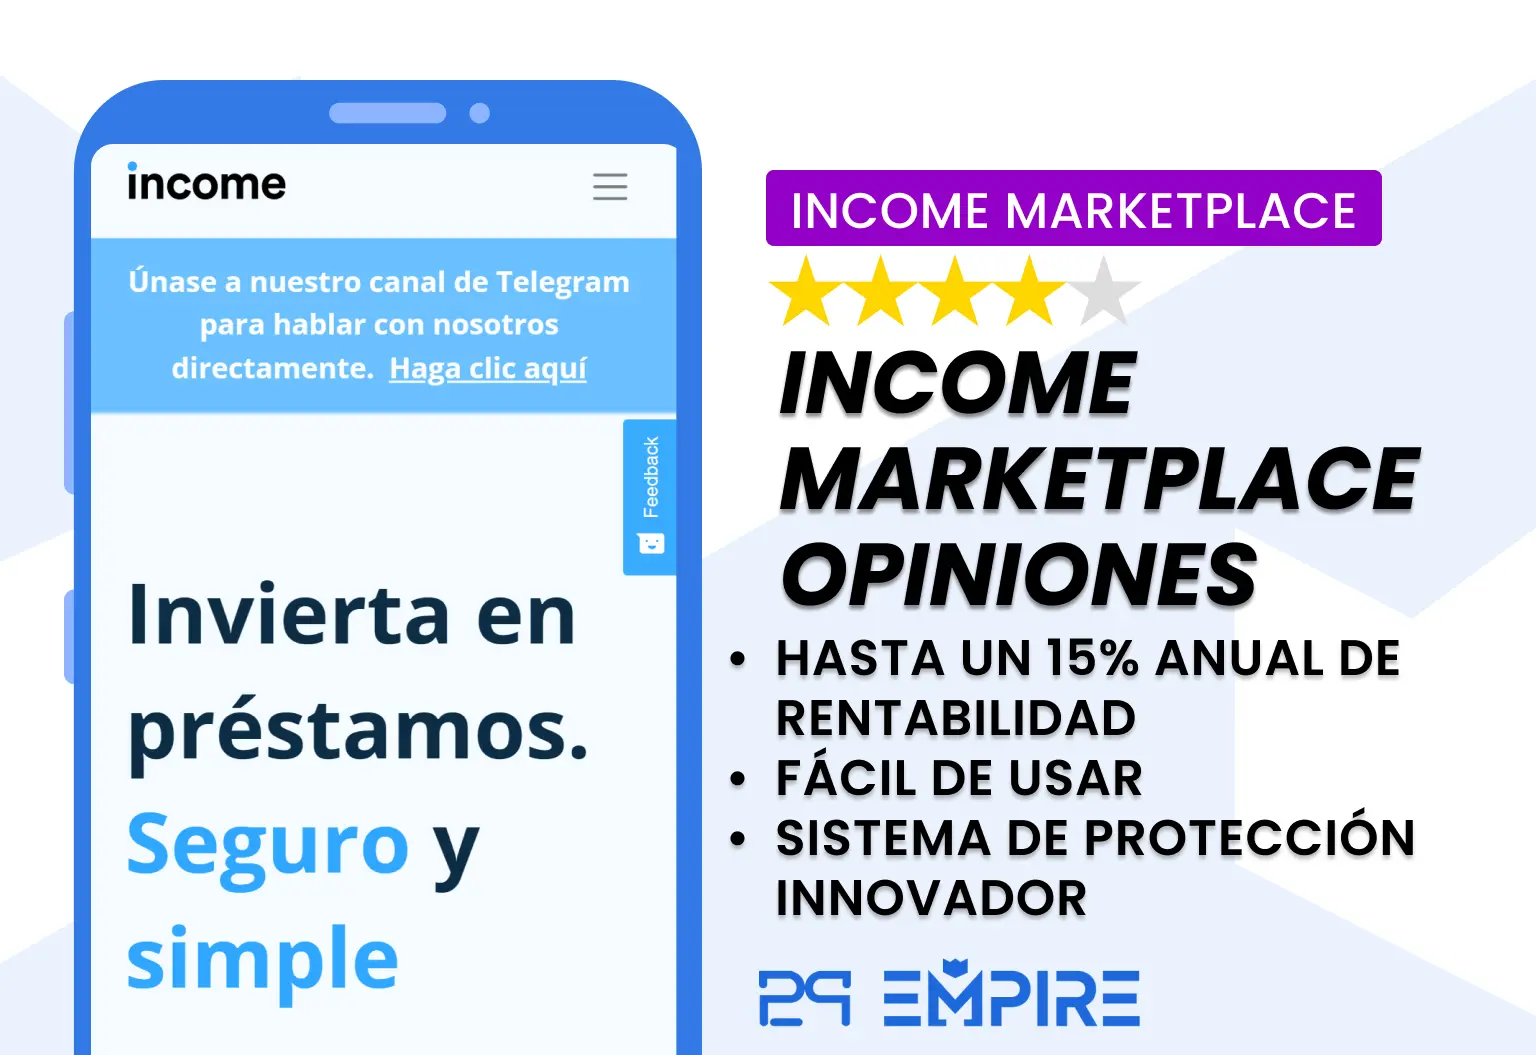 income-marketplace-opiniones